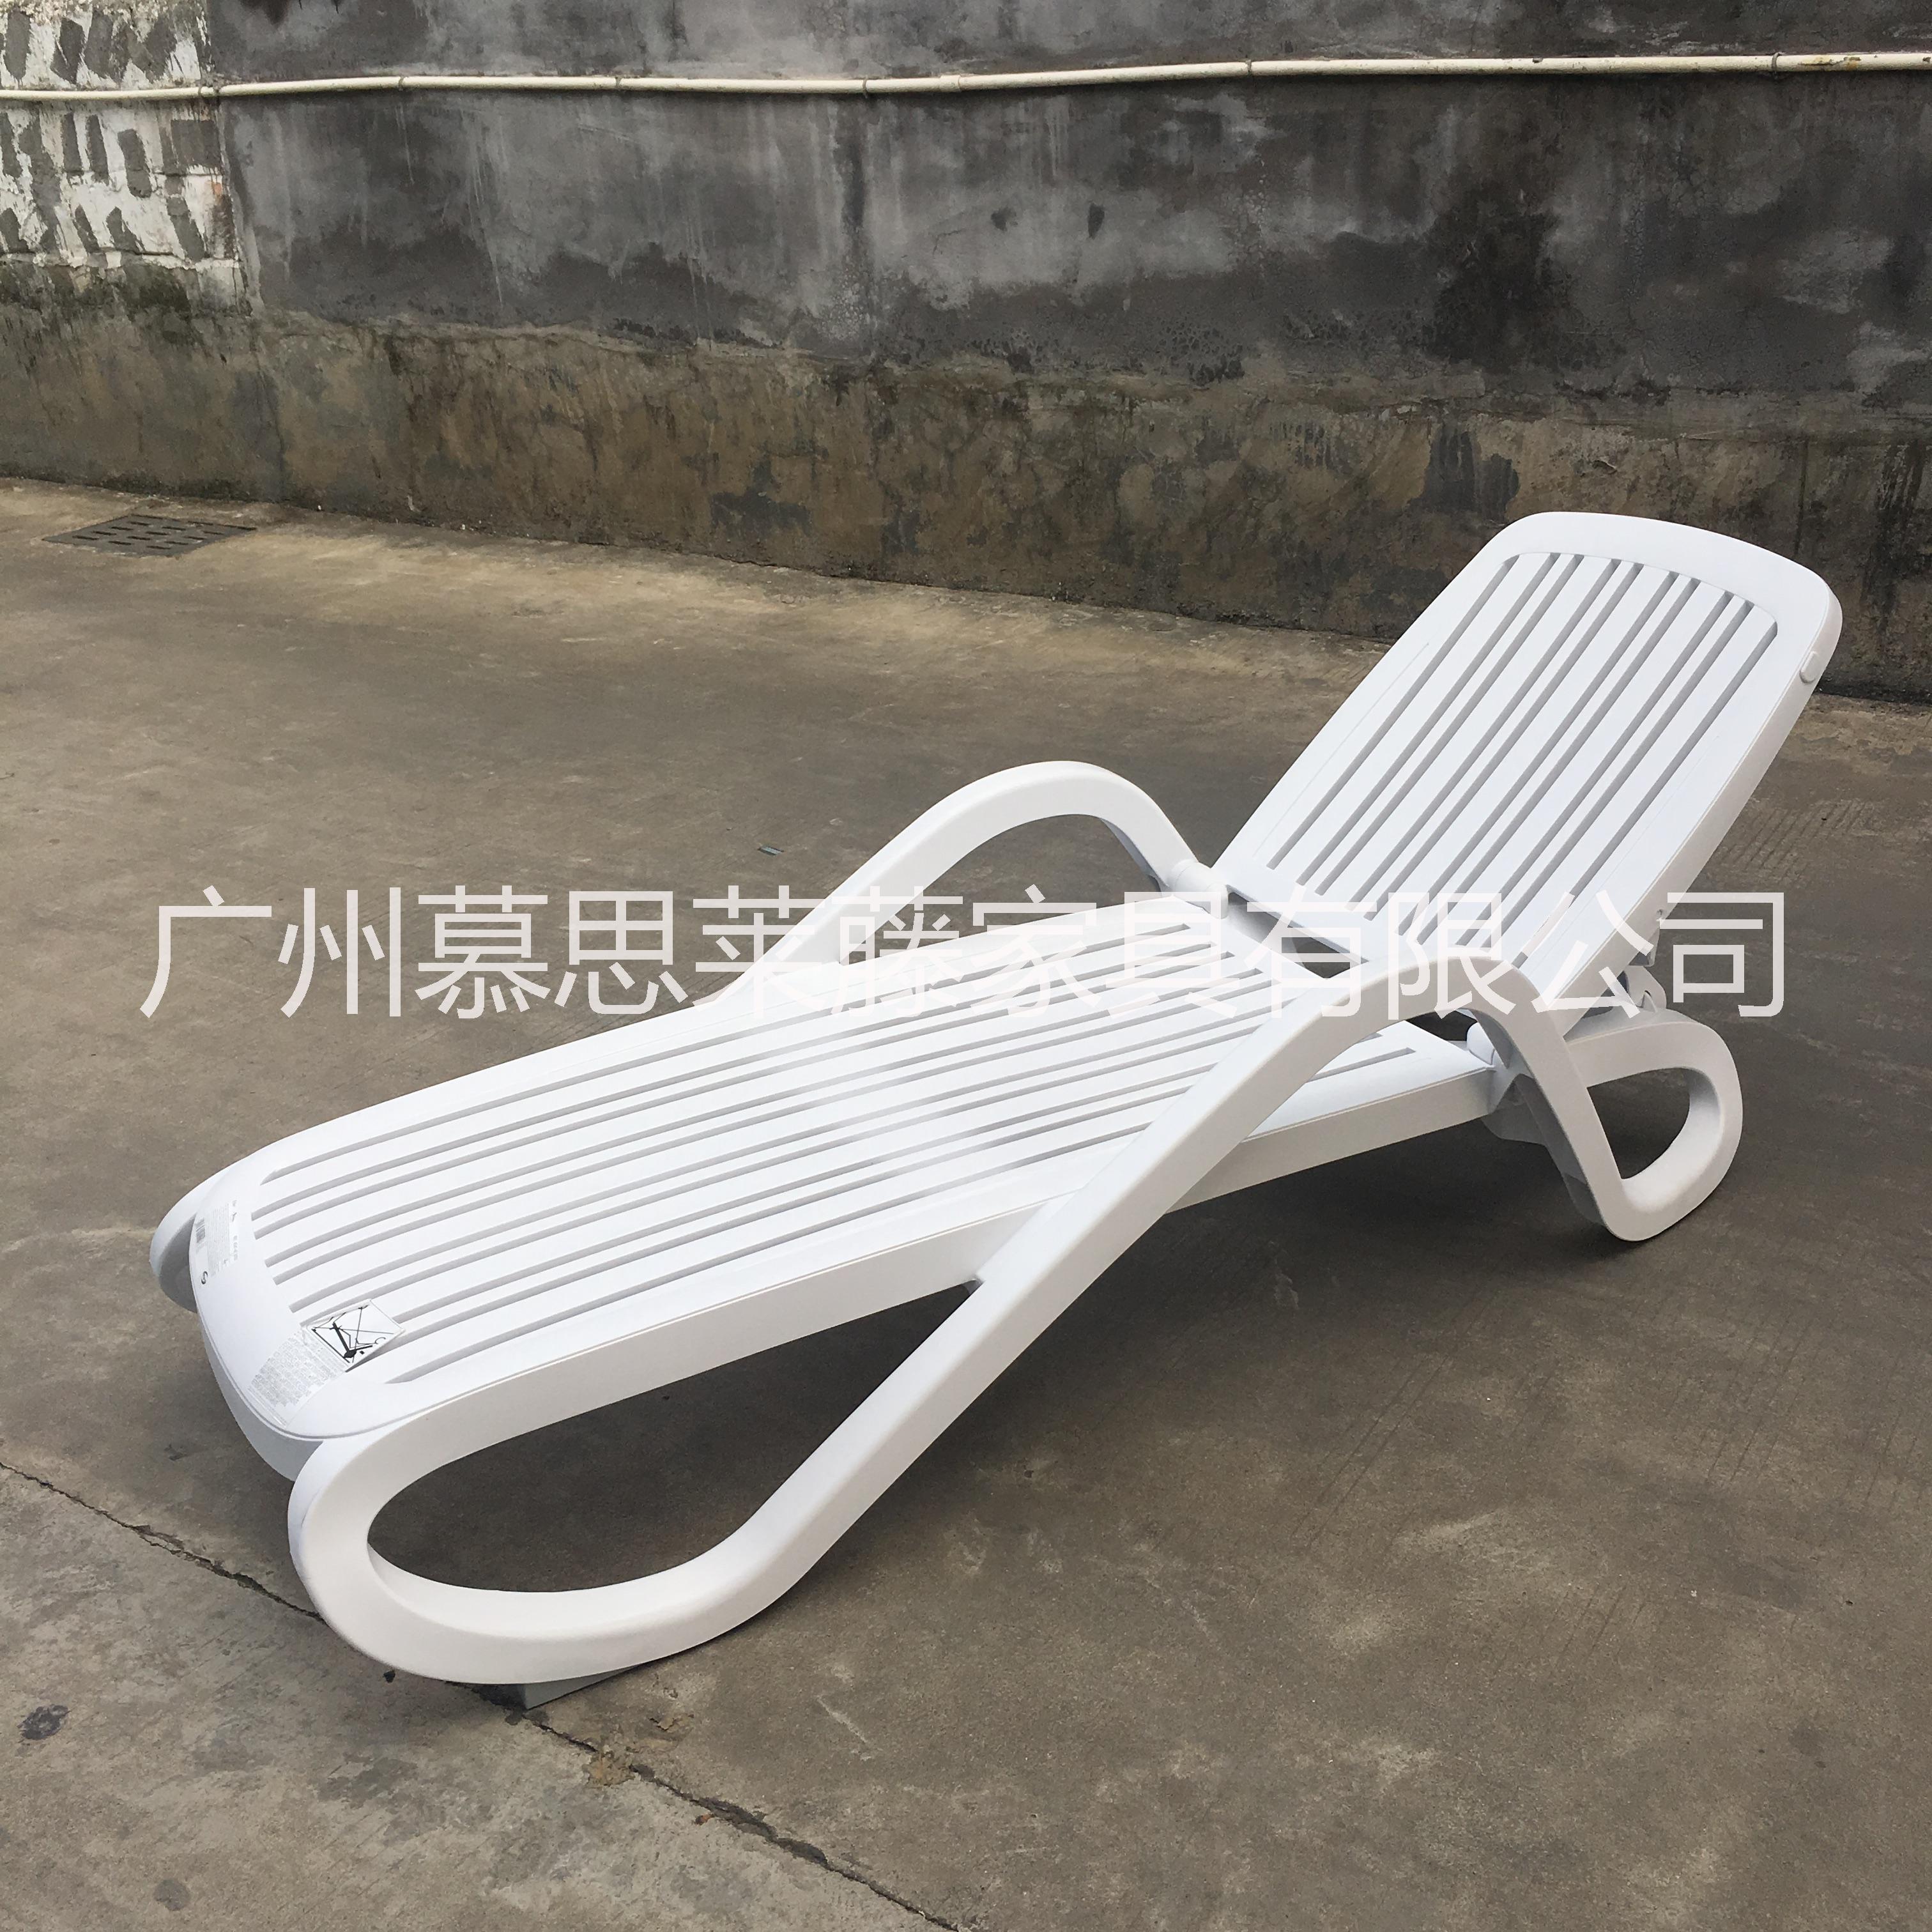 进口塑料沙滩椅 白色海边沙滩椅 可折叠沙滩躺床 户外休闲午休躺椅图片